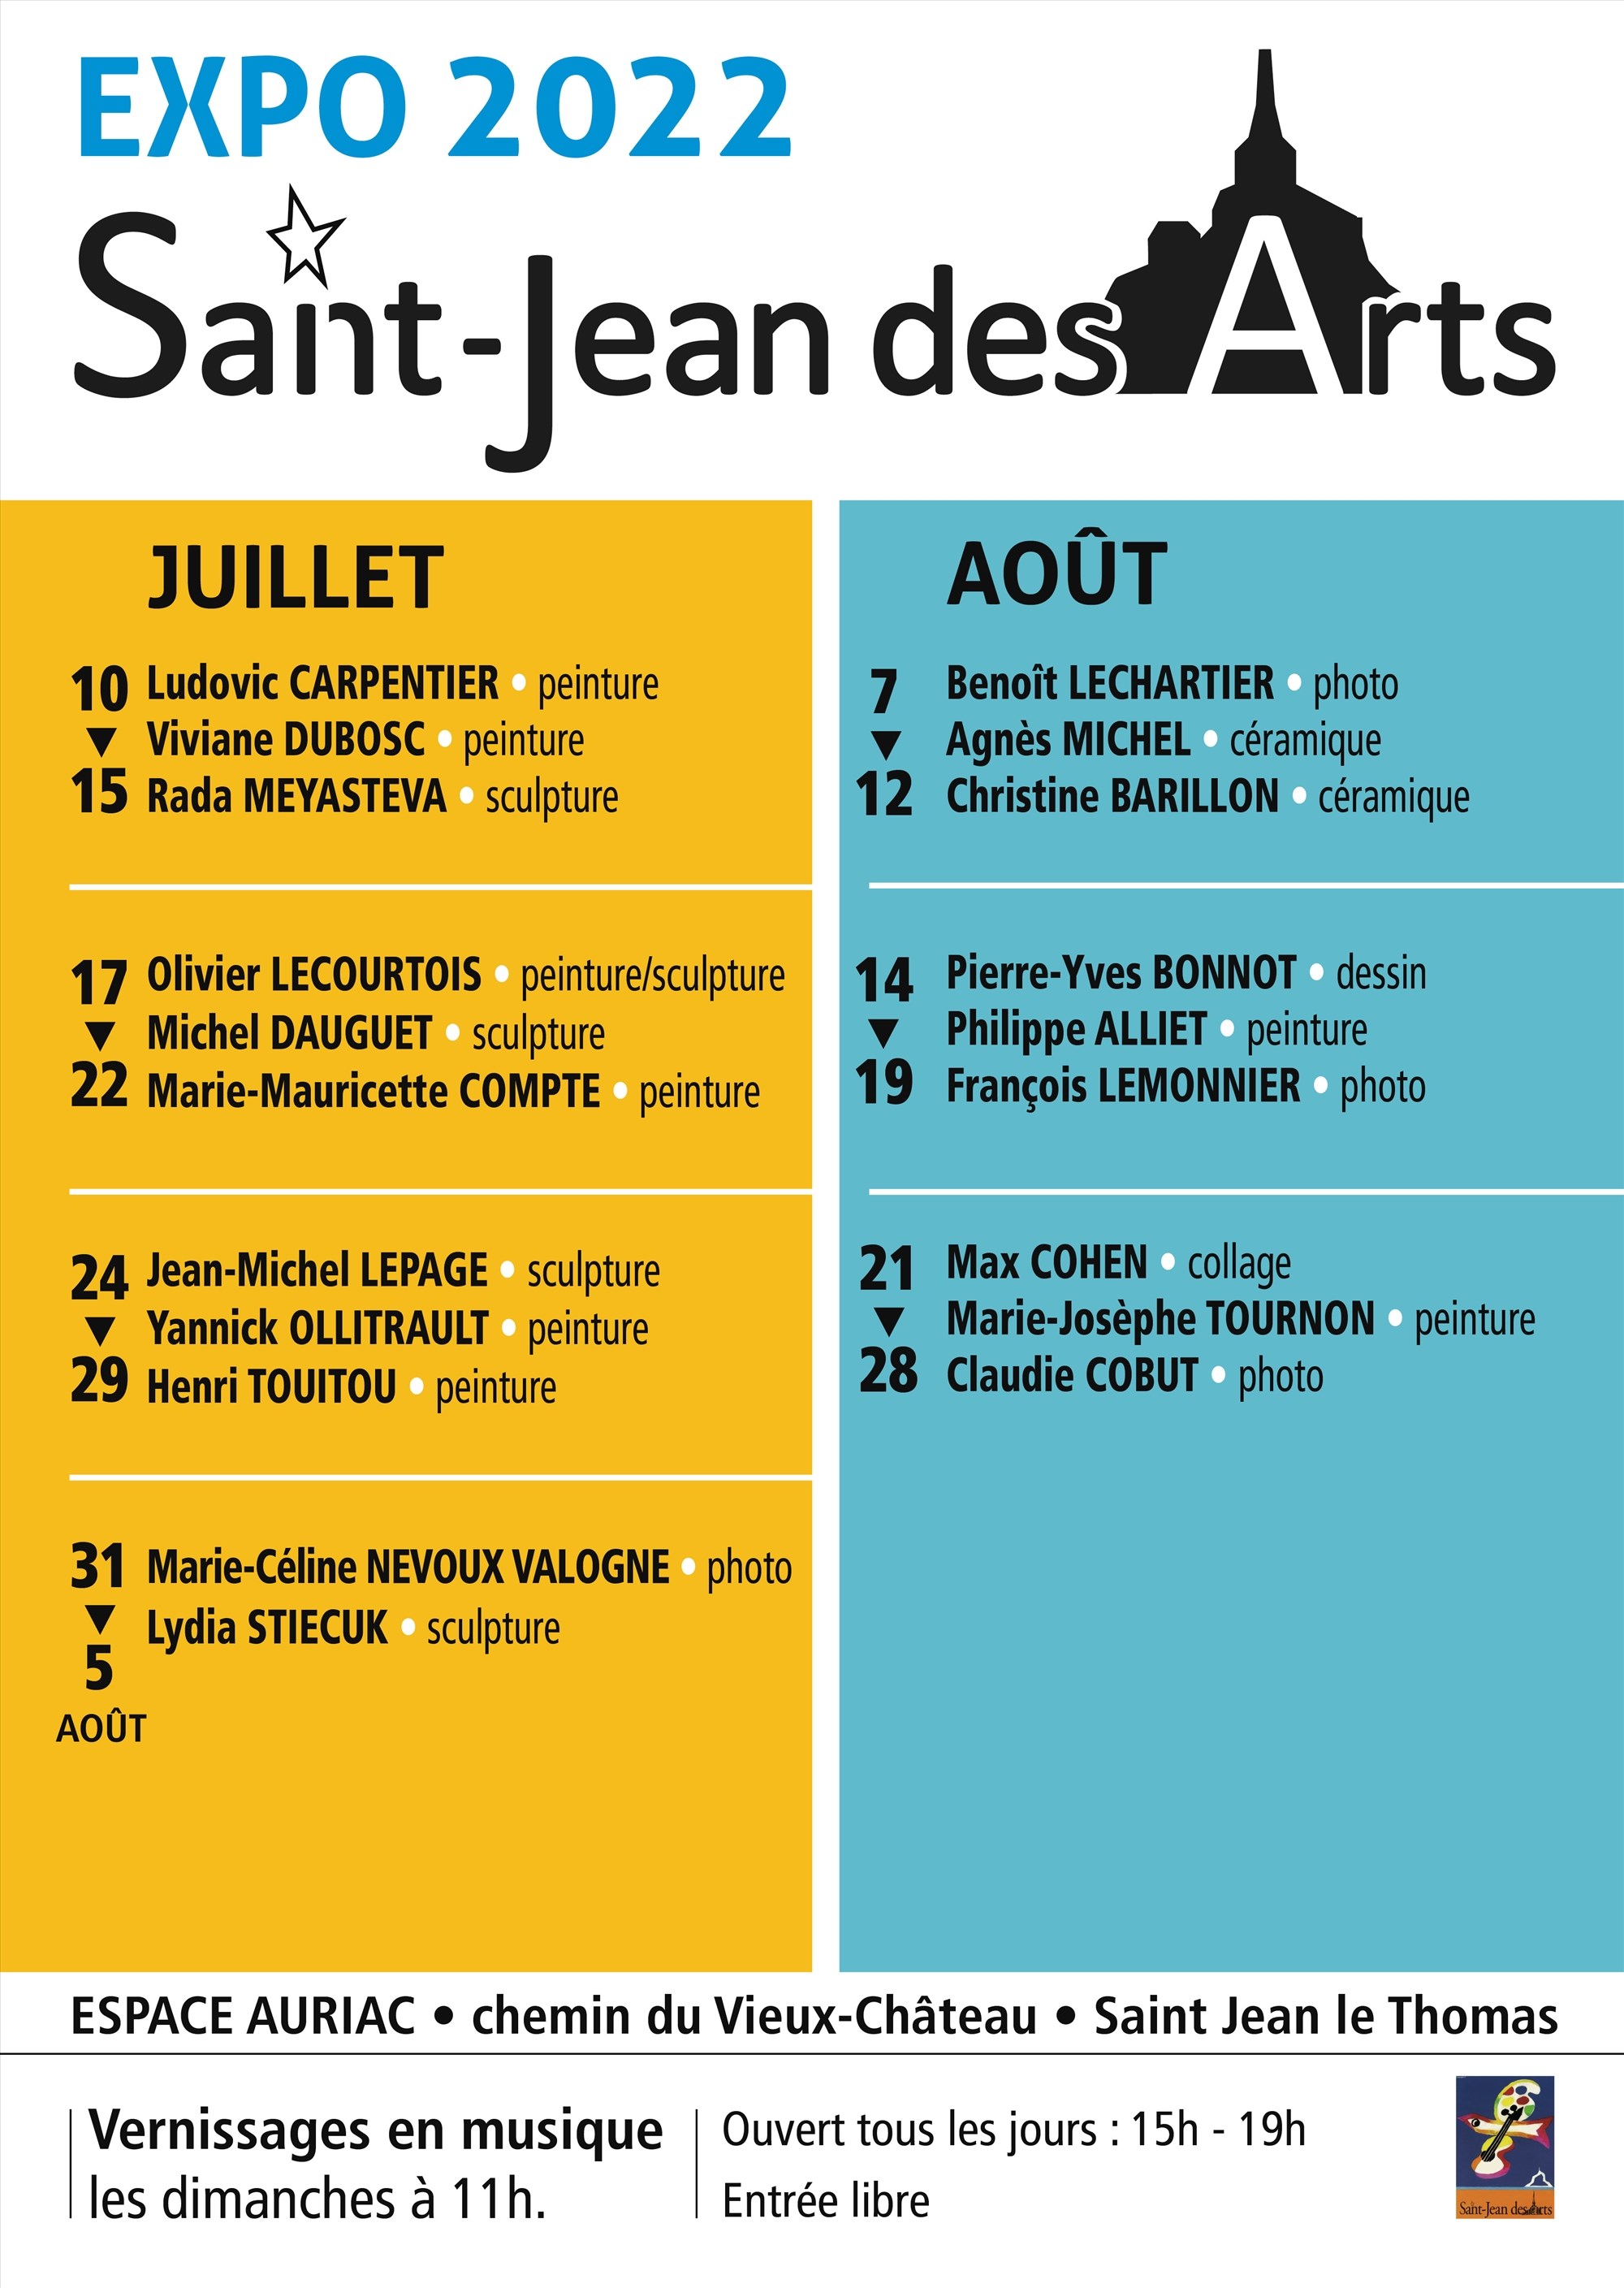 Le 10/7/2022, St Jean des Arts revient